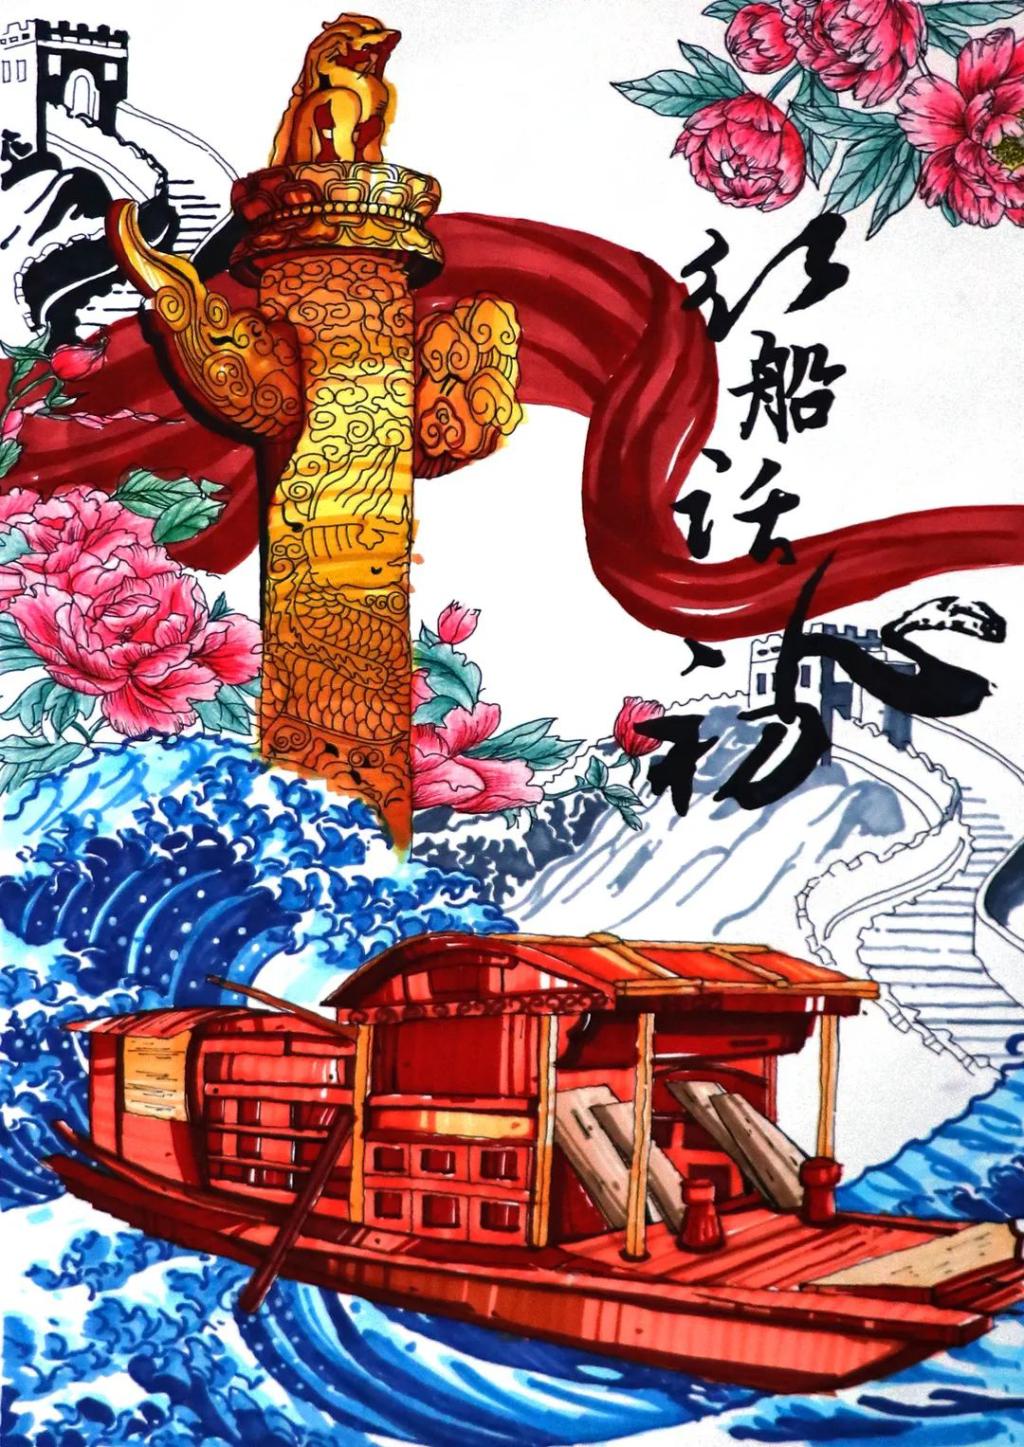 广西红色革命的绘画图片